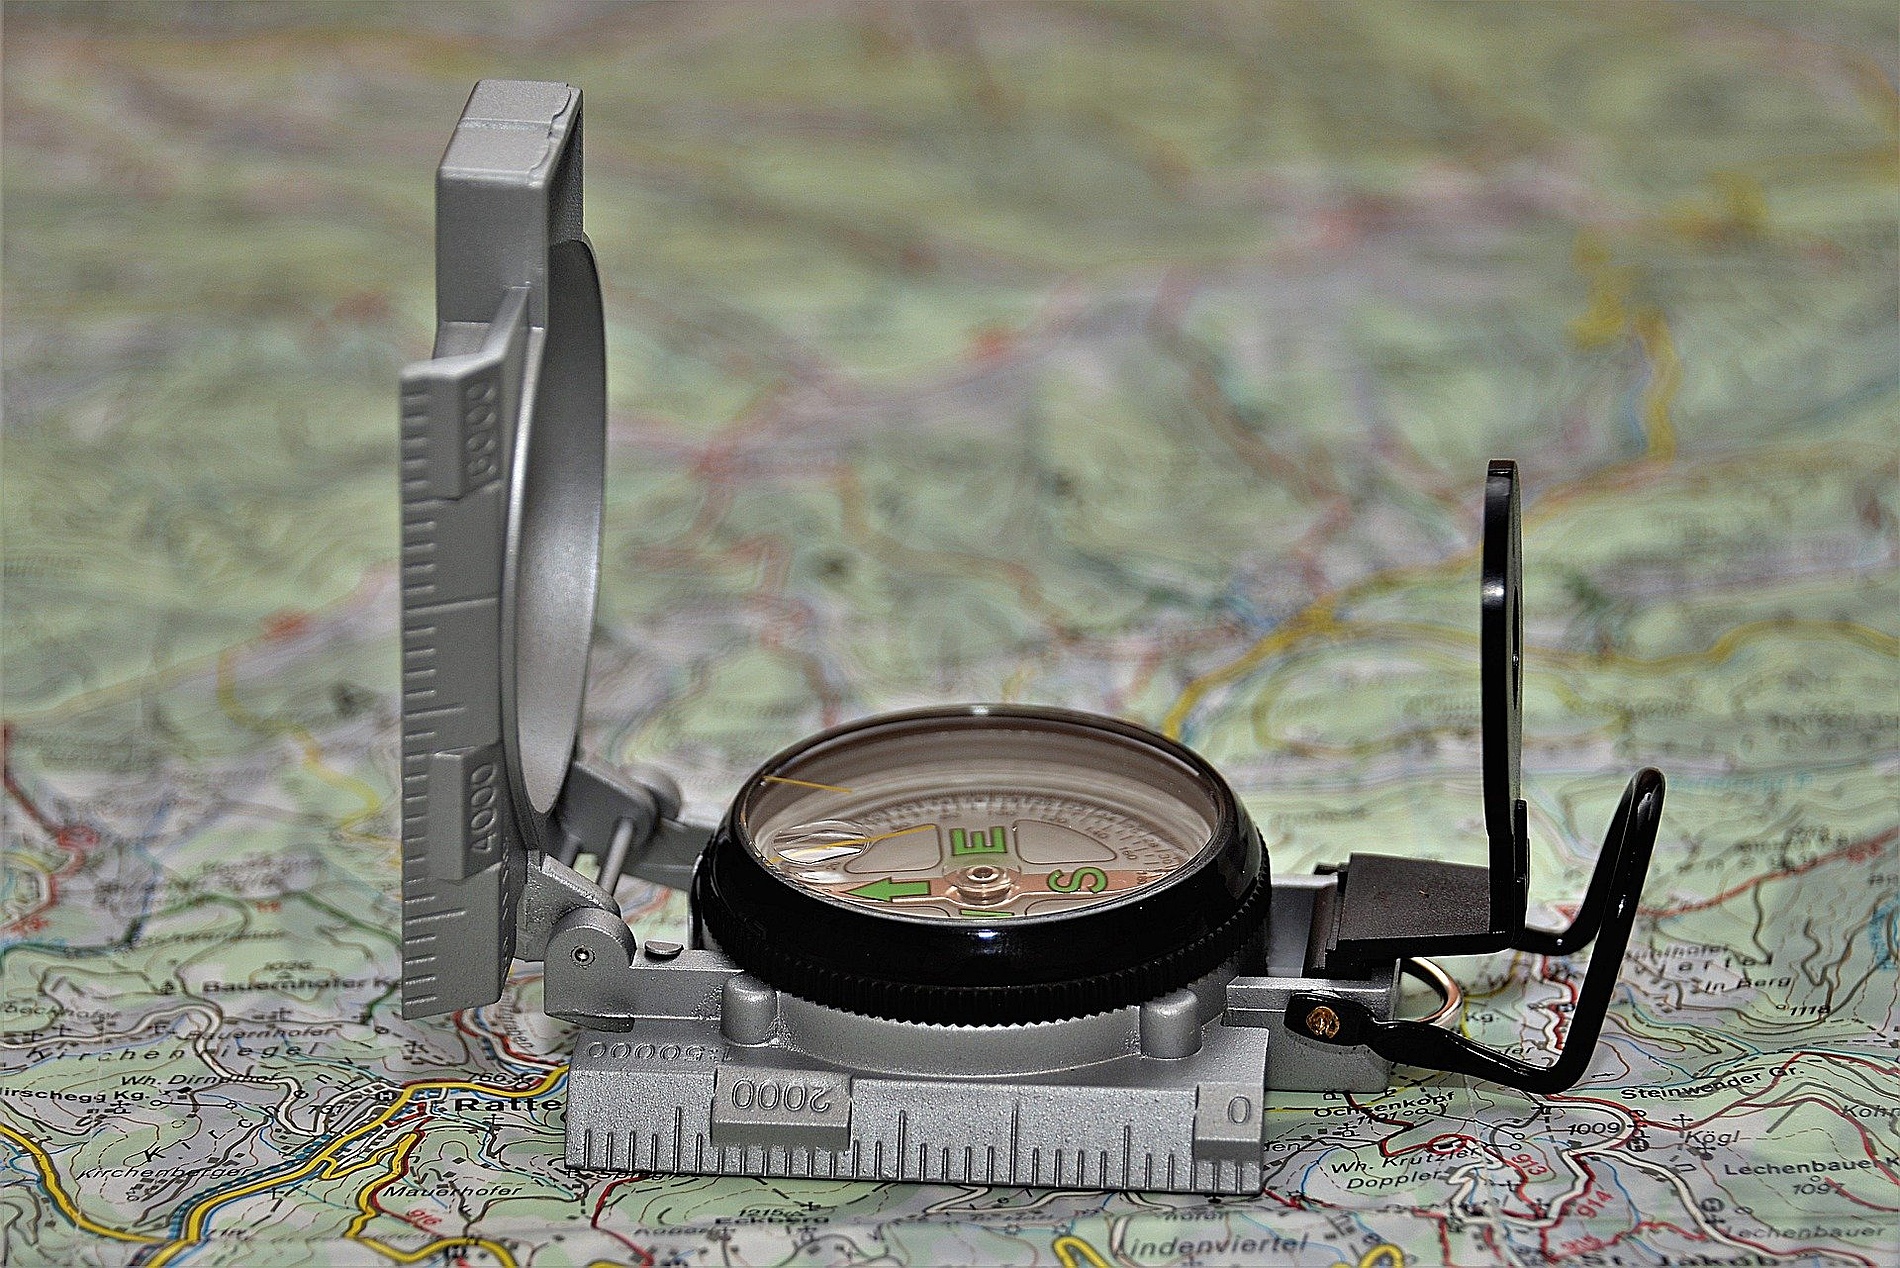 Karte und Kompaß um den richtigen Wegzu finden - Bild von PixLord auf Pixabay